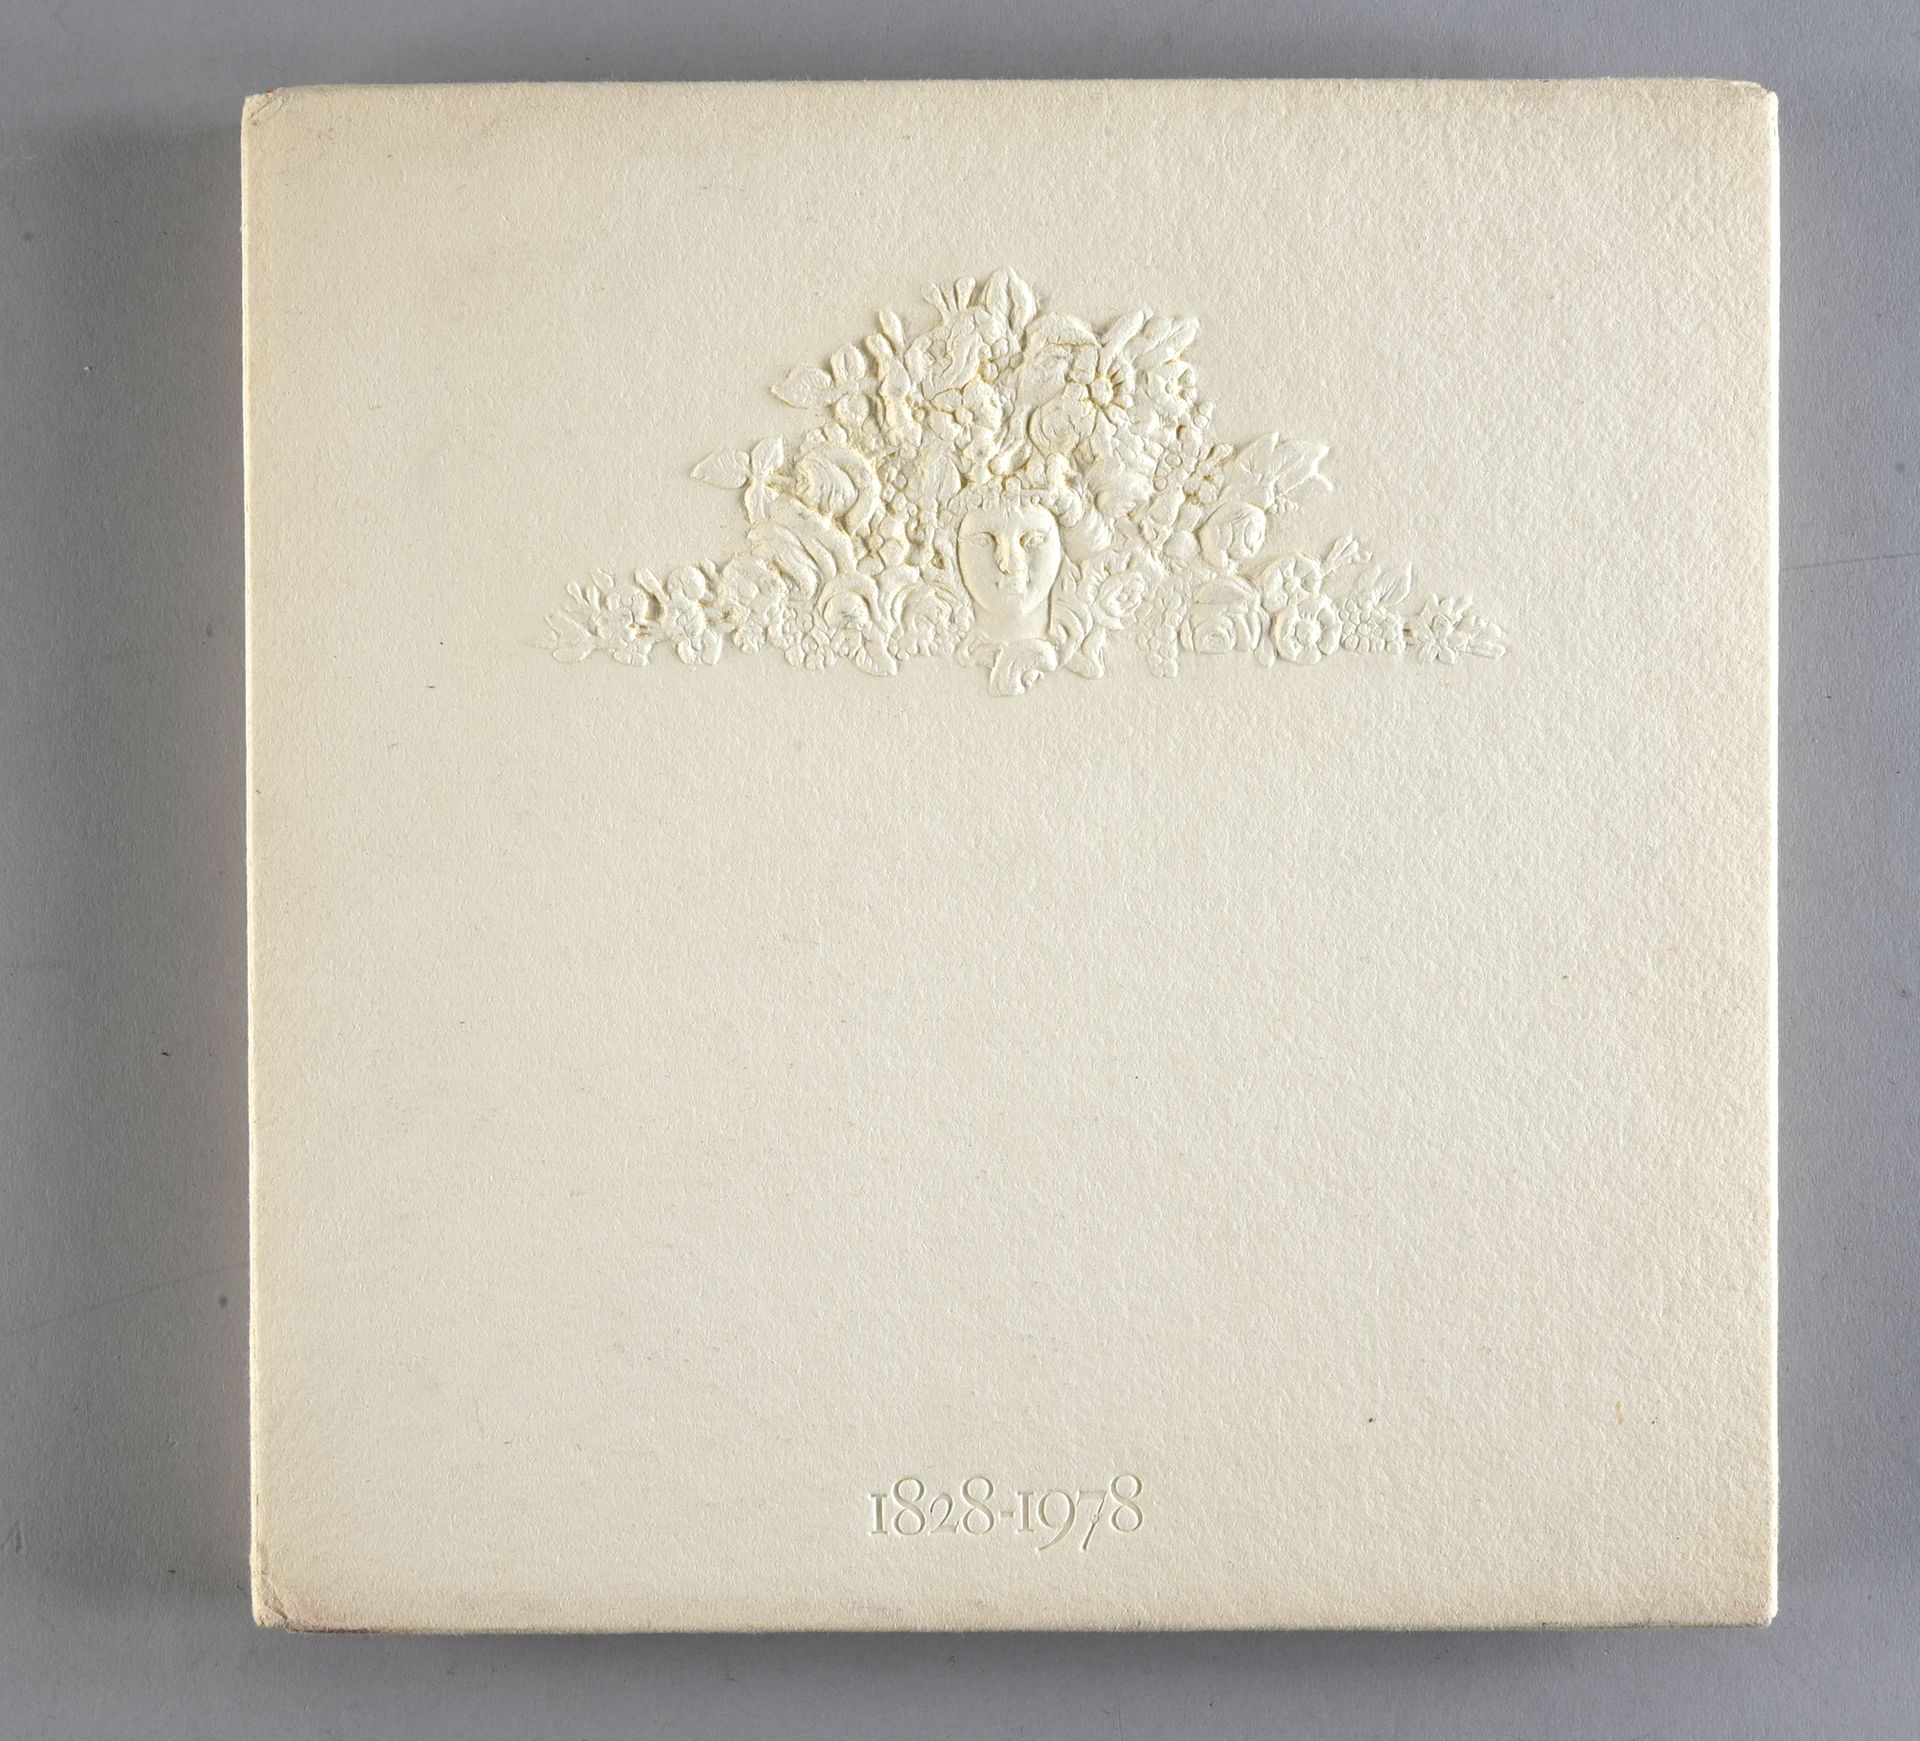 Guerlain - (1828-1978) 
Libro del Cien Cincuenta Aniversario de la casa publicad&hellip;